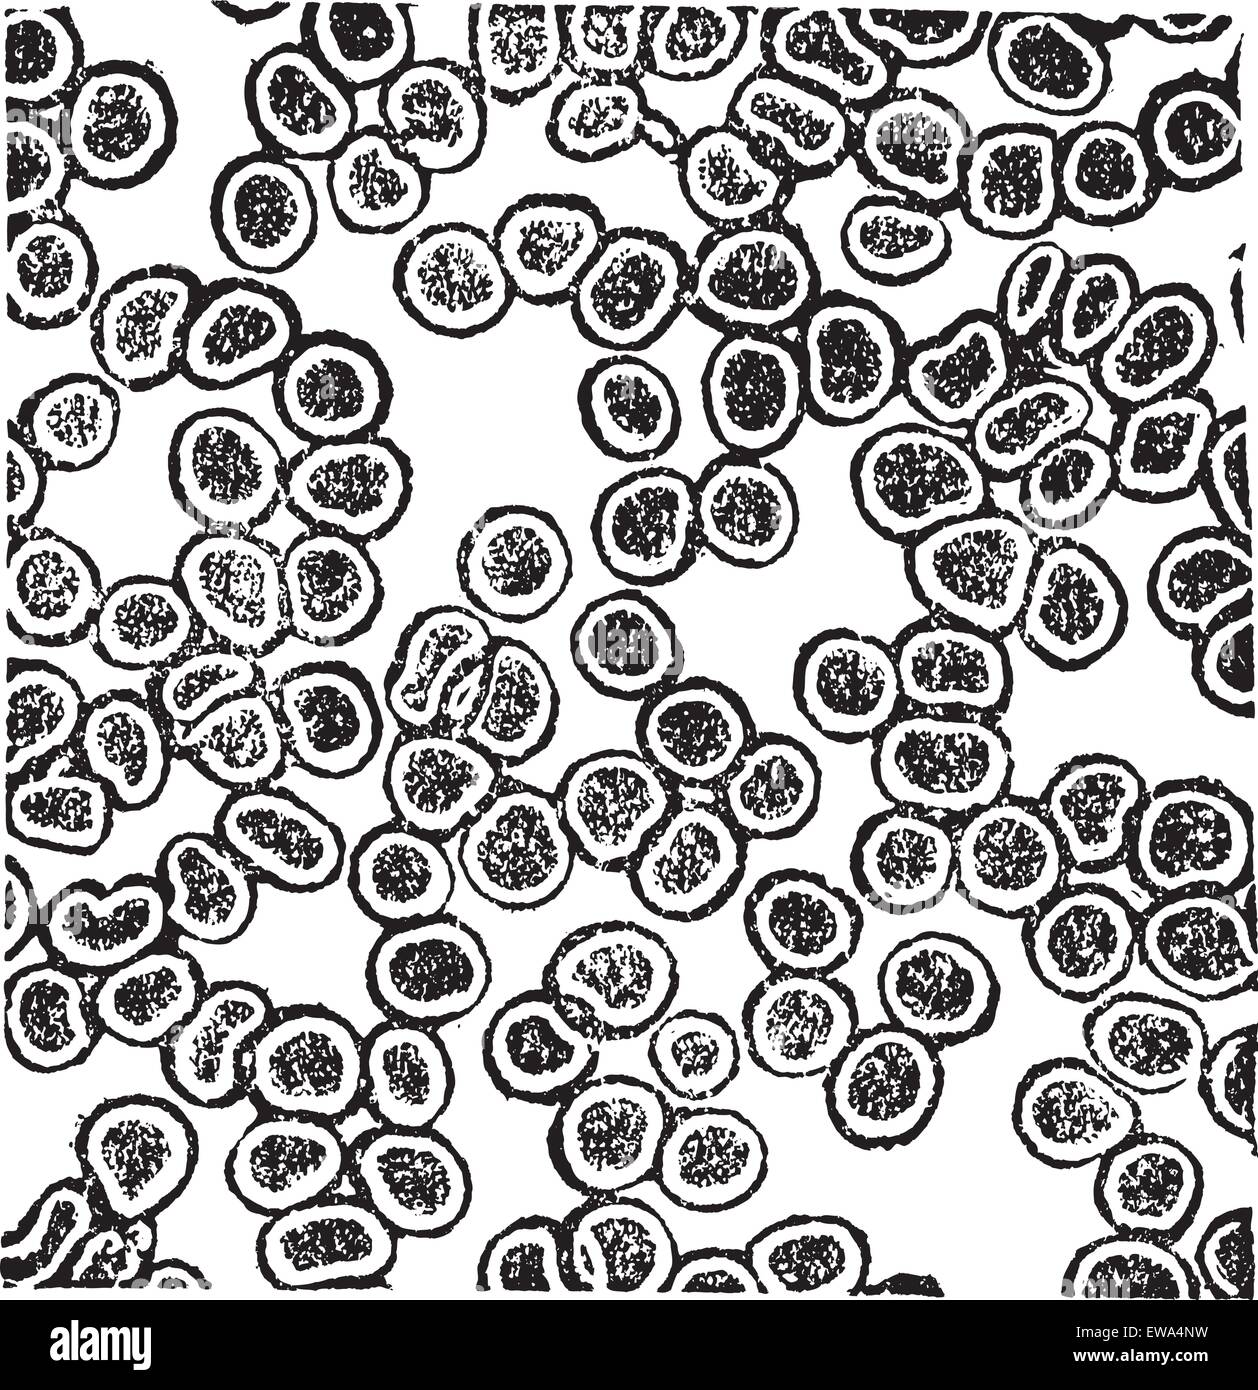 Globuli rossi o eritrociti, vintage incisione. Vecchie illustrazioni incise le cellule rosse del sangue. Illustrazione Vettoriale